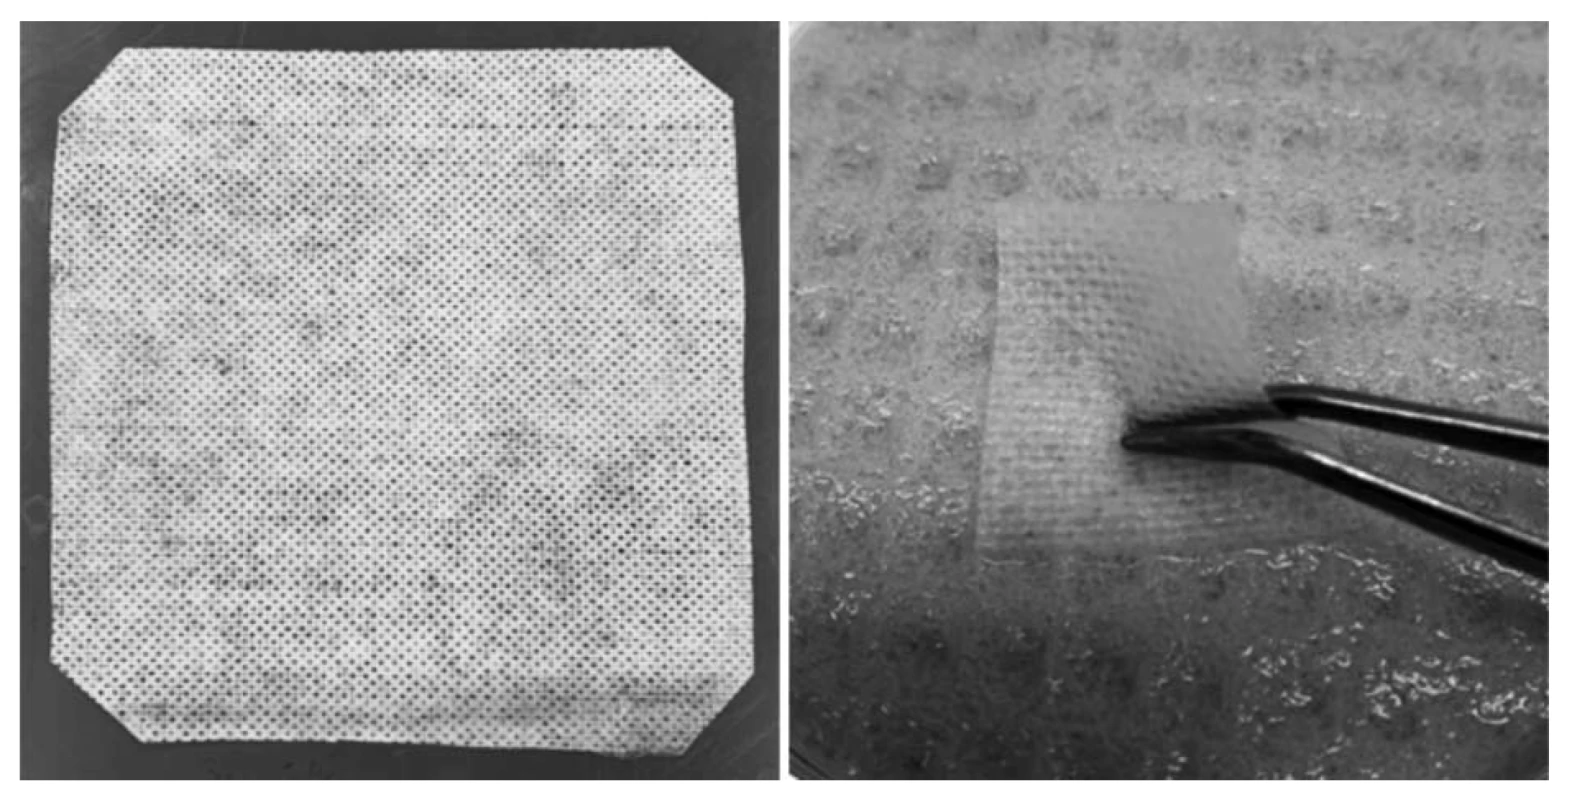 Vzhled připraveného krytí na rány (vlevo) – usušený vzorek o rozměrech cca 12 × 12 cm, vzorek
o rozměru 2,5 × 2,5 cm ve vlhkém stavu na umělém modelu rány po 24 hodinách (vpravo)